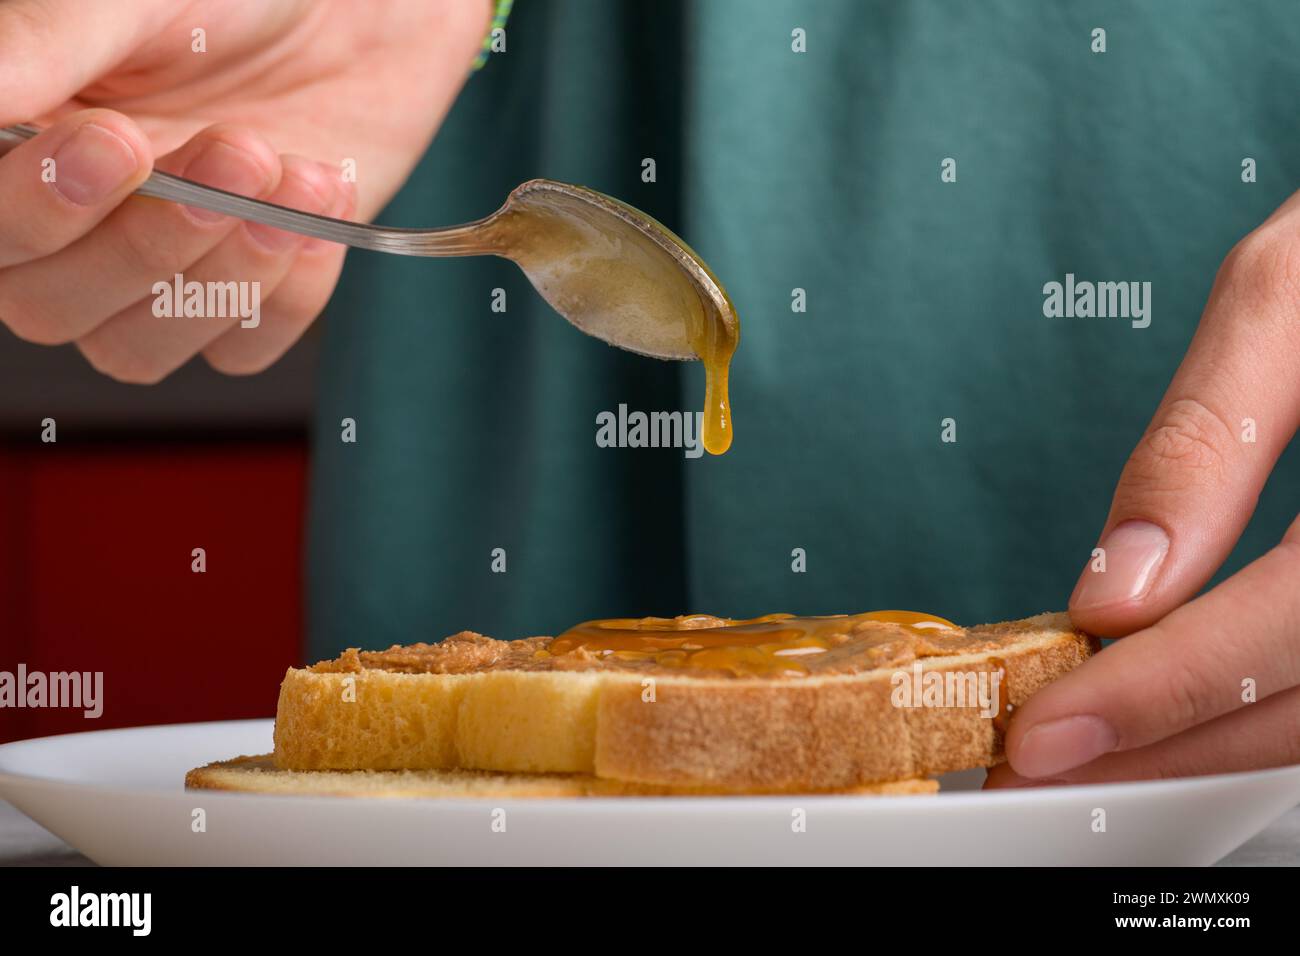 une goutte de miel coulant d'une cuillère sur un sandwich au beurre d'arachide. Les mains de la femme puant le miel avec une cuillère sur un toast avec du beurre d'arachide pour faire un s. Banque D'Images